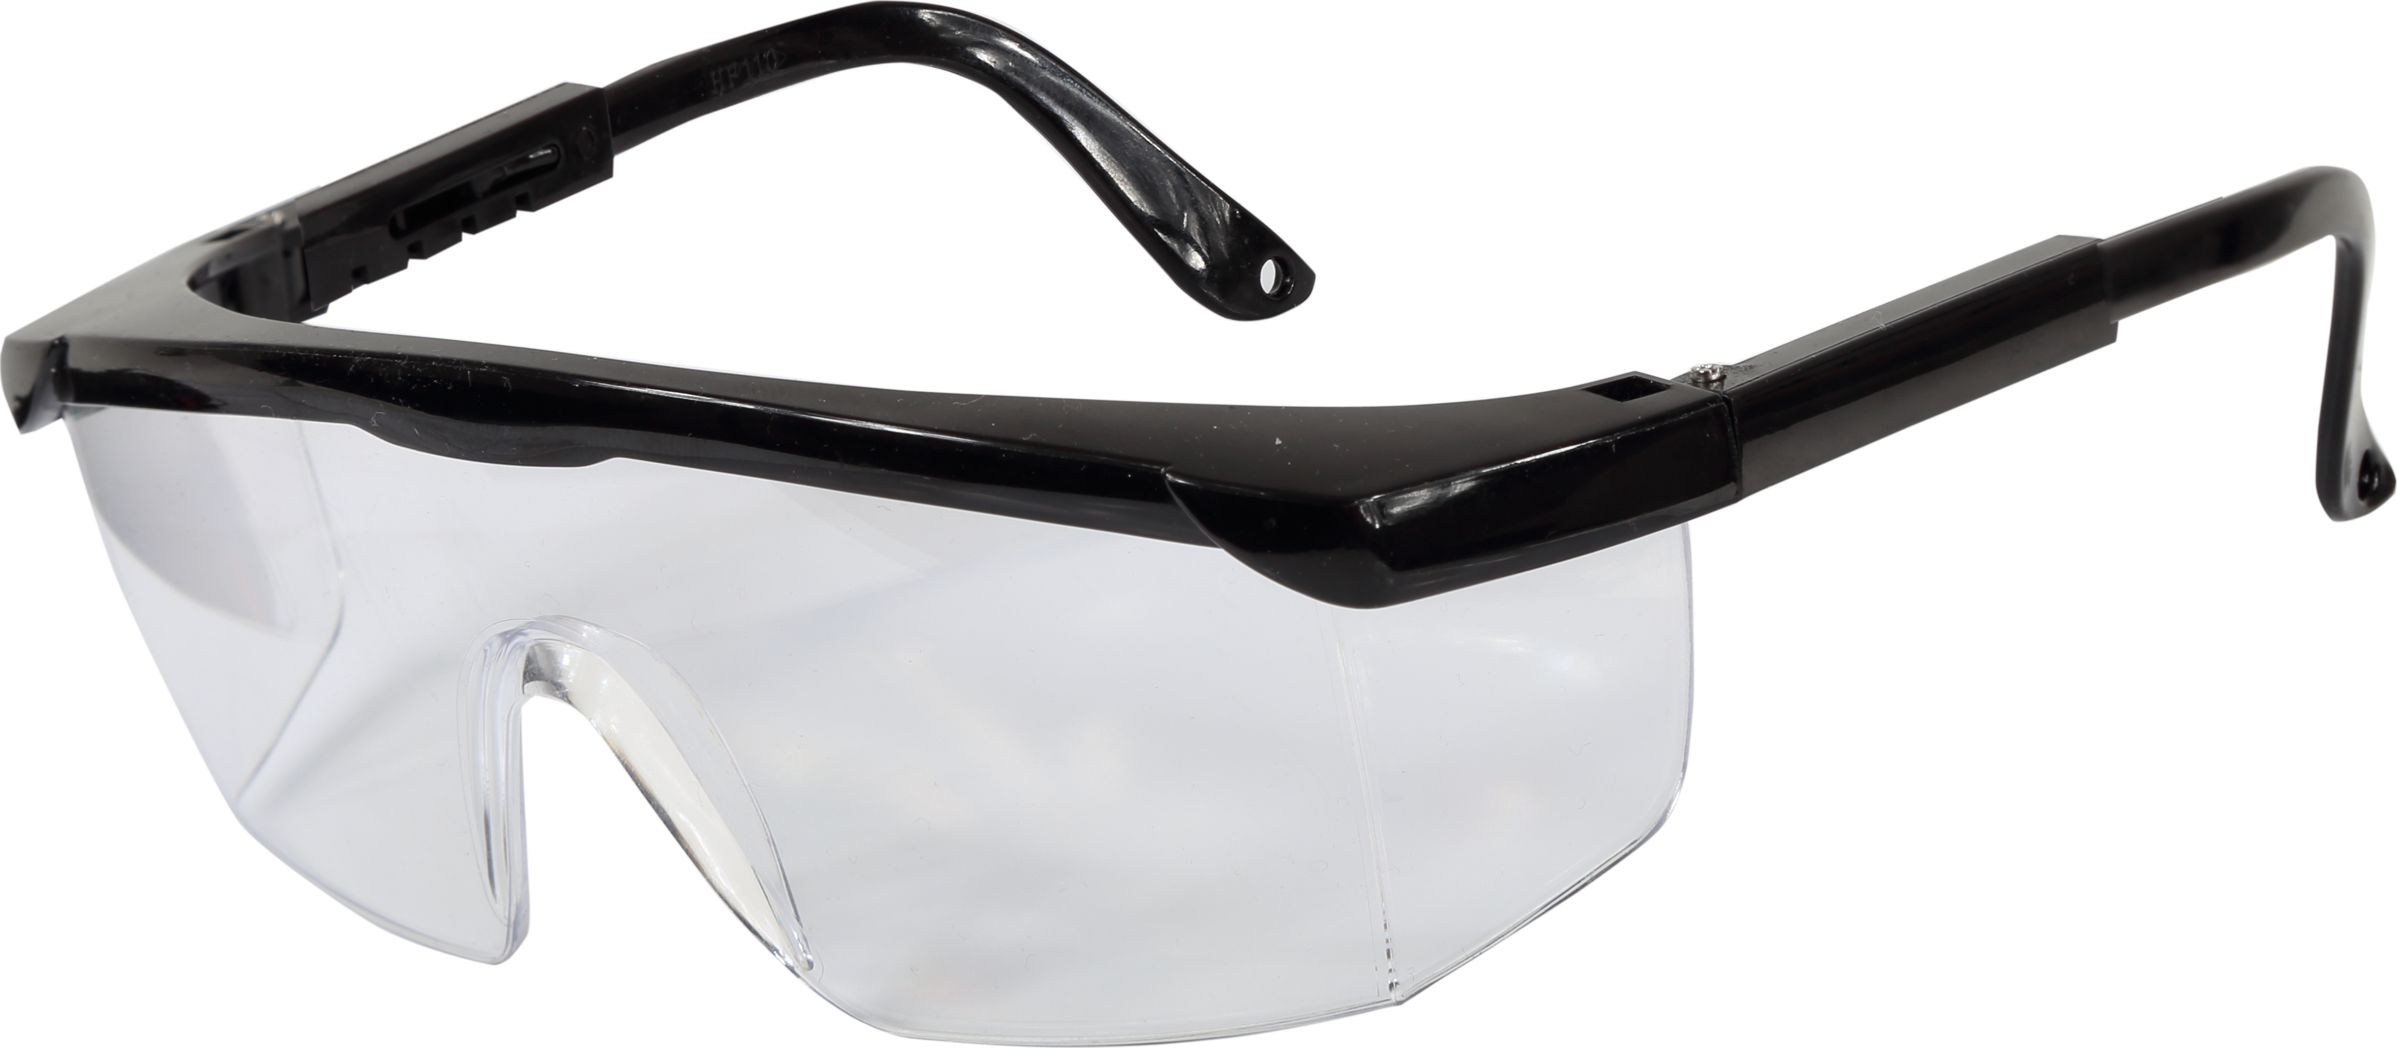 Lahti Pro okulary ochronne bezbarwne regulowane, odpornosc mechaniczna 